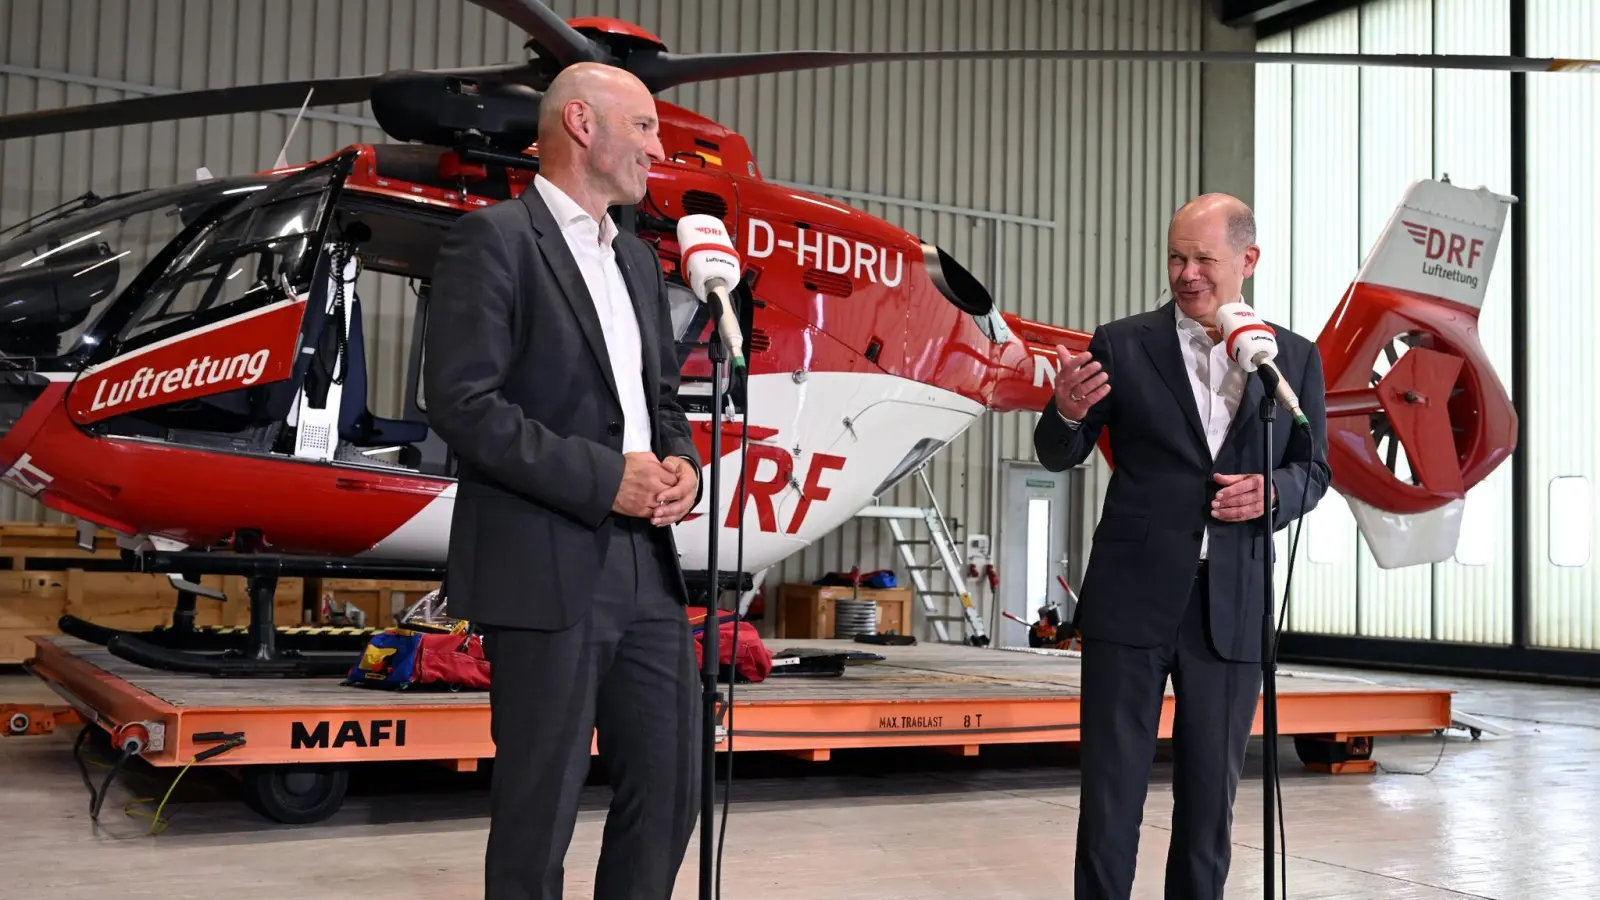 Bundeskanzler Olaf Scholz (SPD) besucht die beiden Stationen der DRF Luftrettung in Nürnberg und spricht neben Krystian Pracz, Vorstandsvorsitzender der DRF Luftrettung. (Foto: Pia Bayer/dpa)